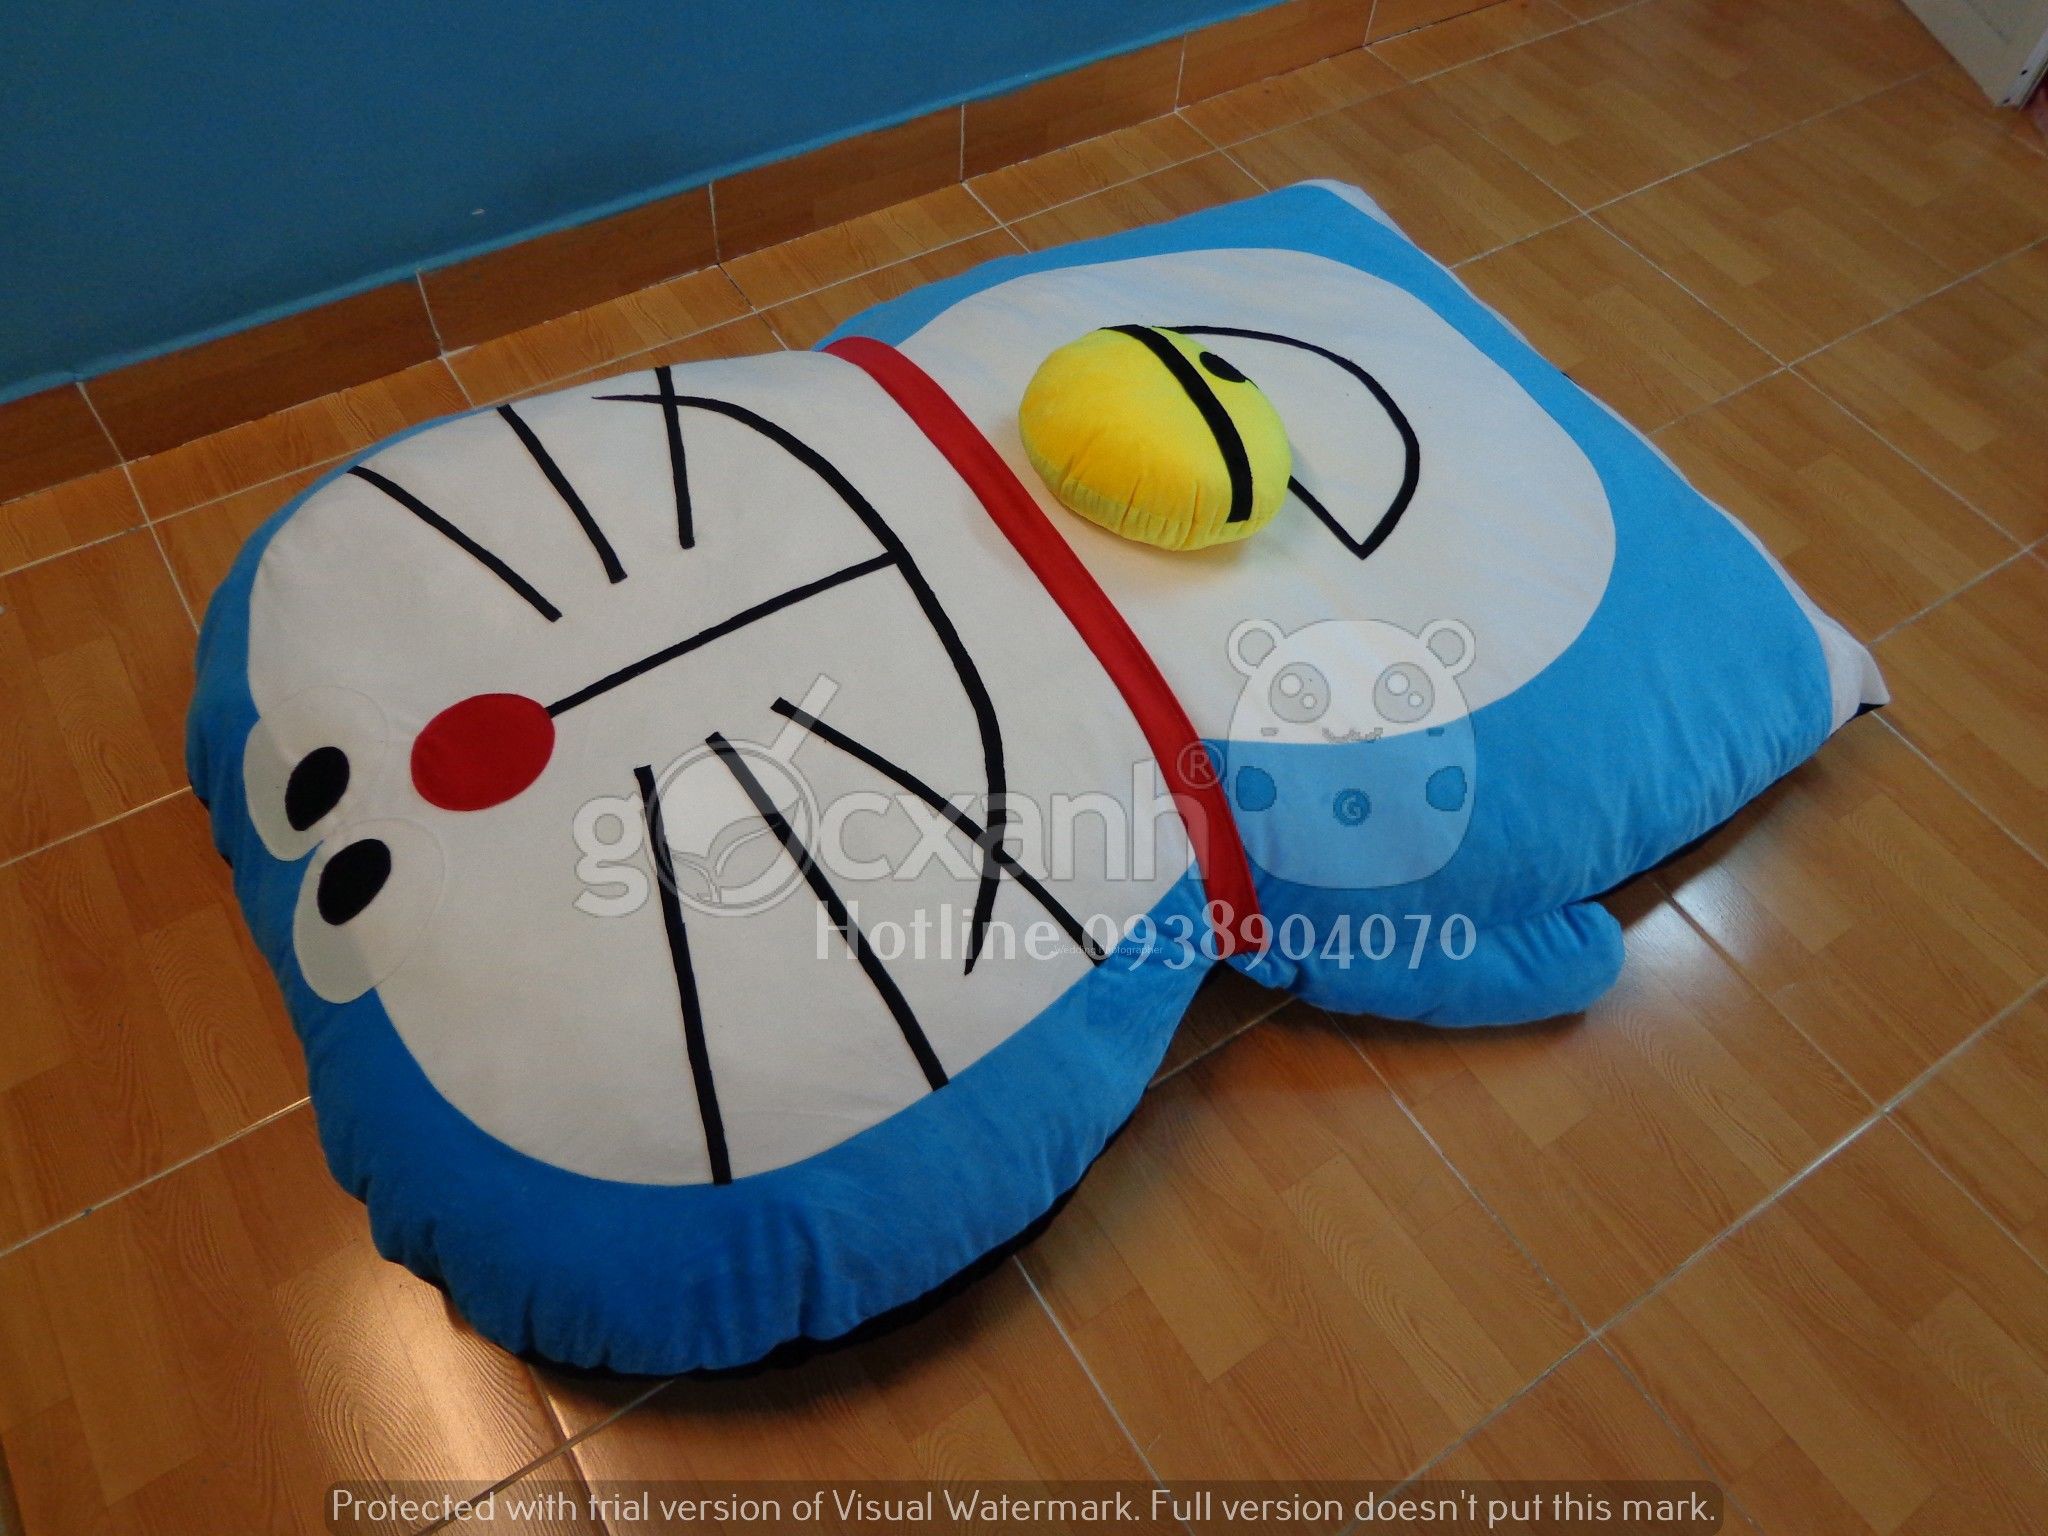 Nệm Doraemon form ốm dài cười mỉm (1.2 x 1.8m)